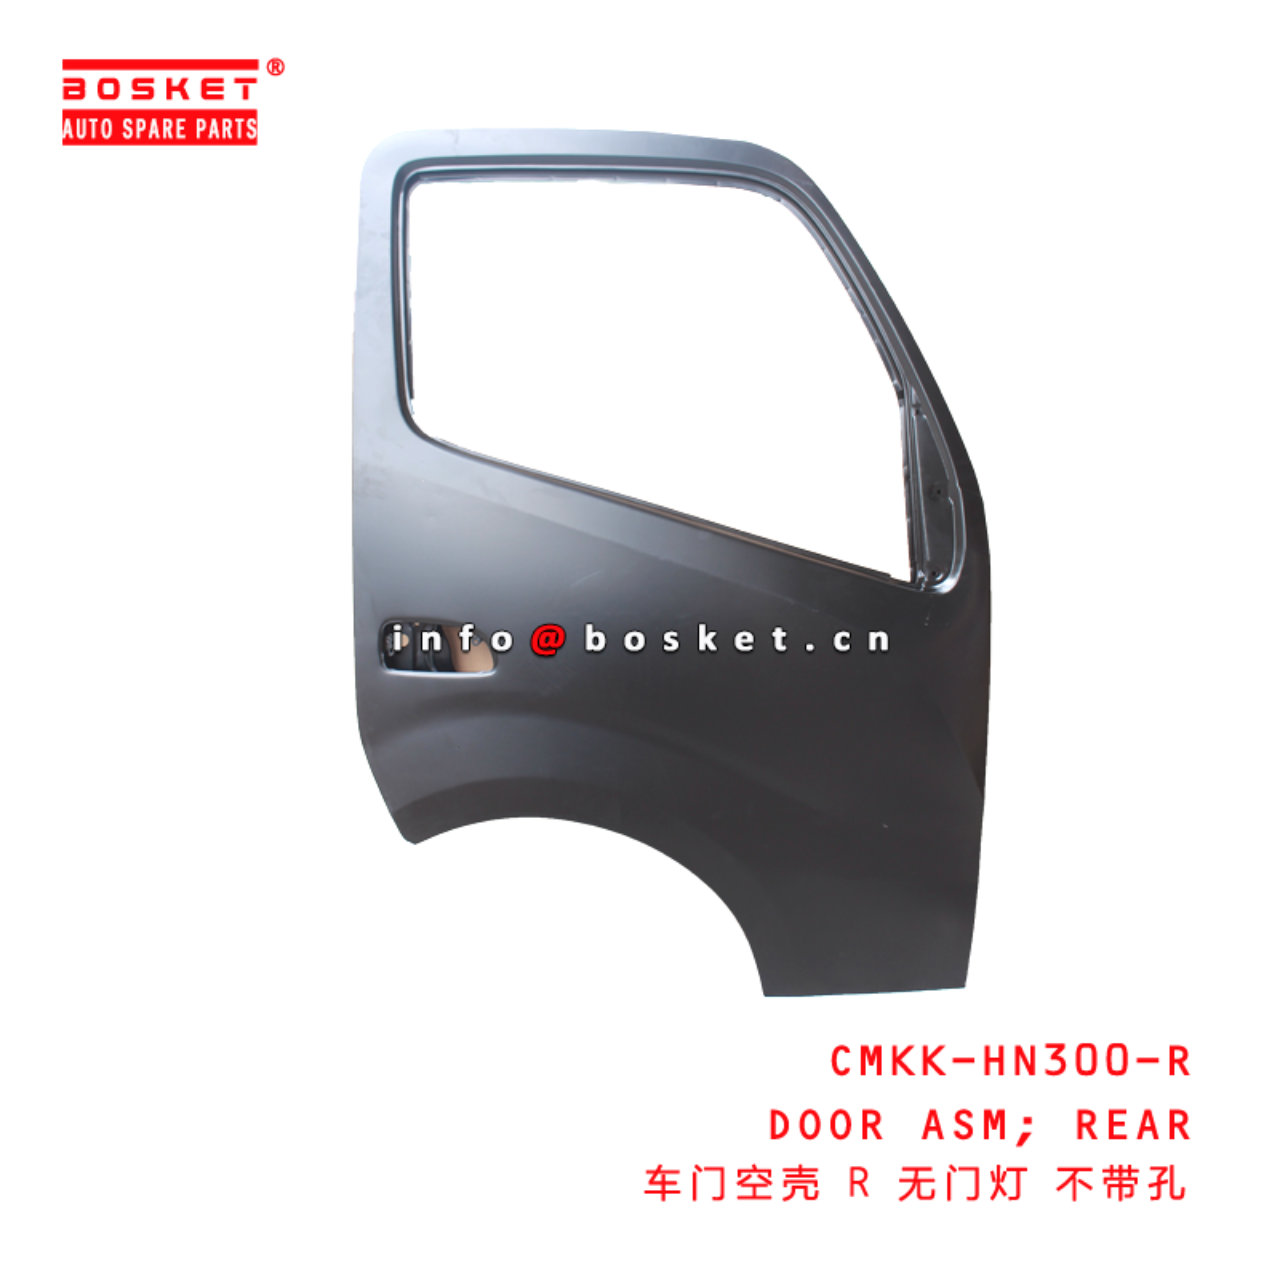 CMKK-HN300-R Rear Door Assembly Suitable for ISUZU HINO300